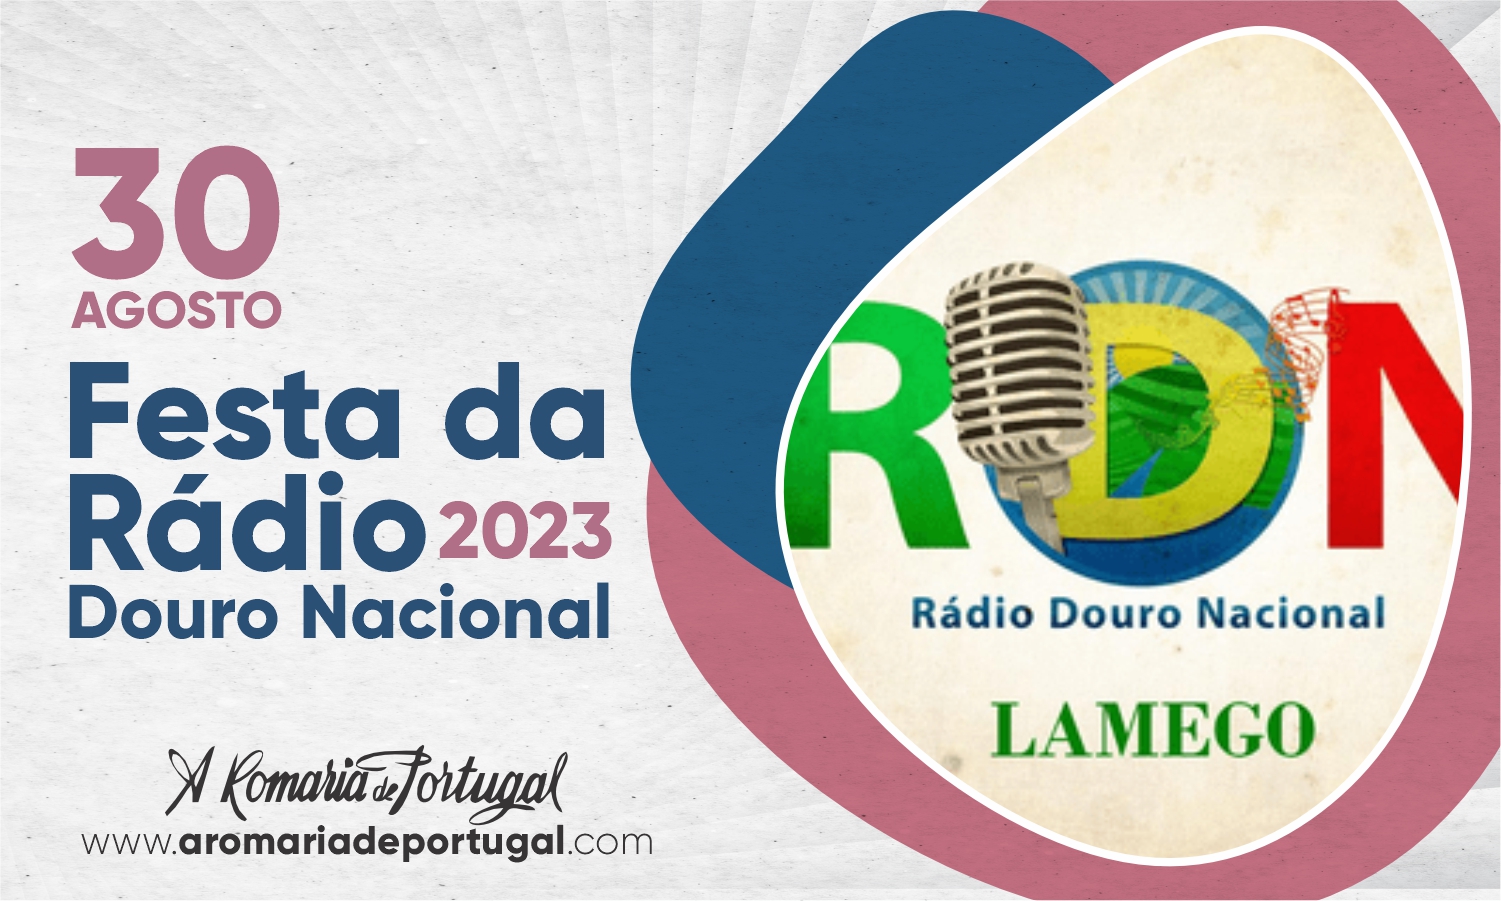 Festa da Rádio Douro Nacional